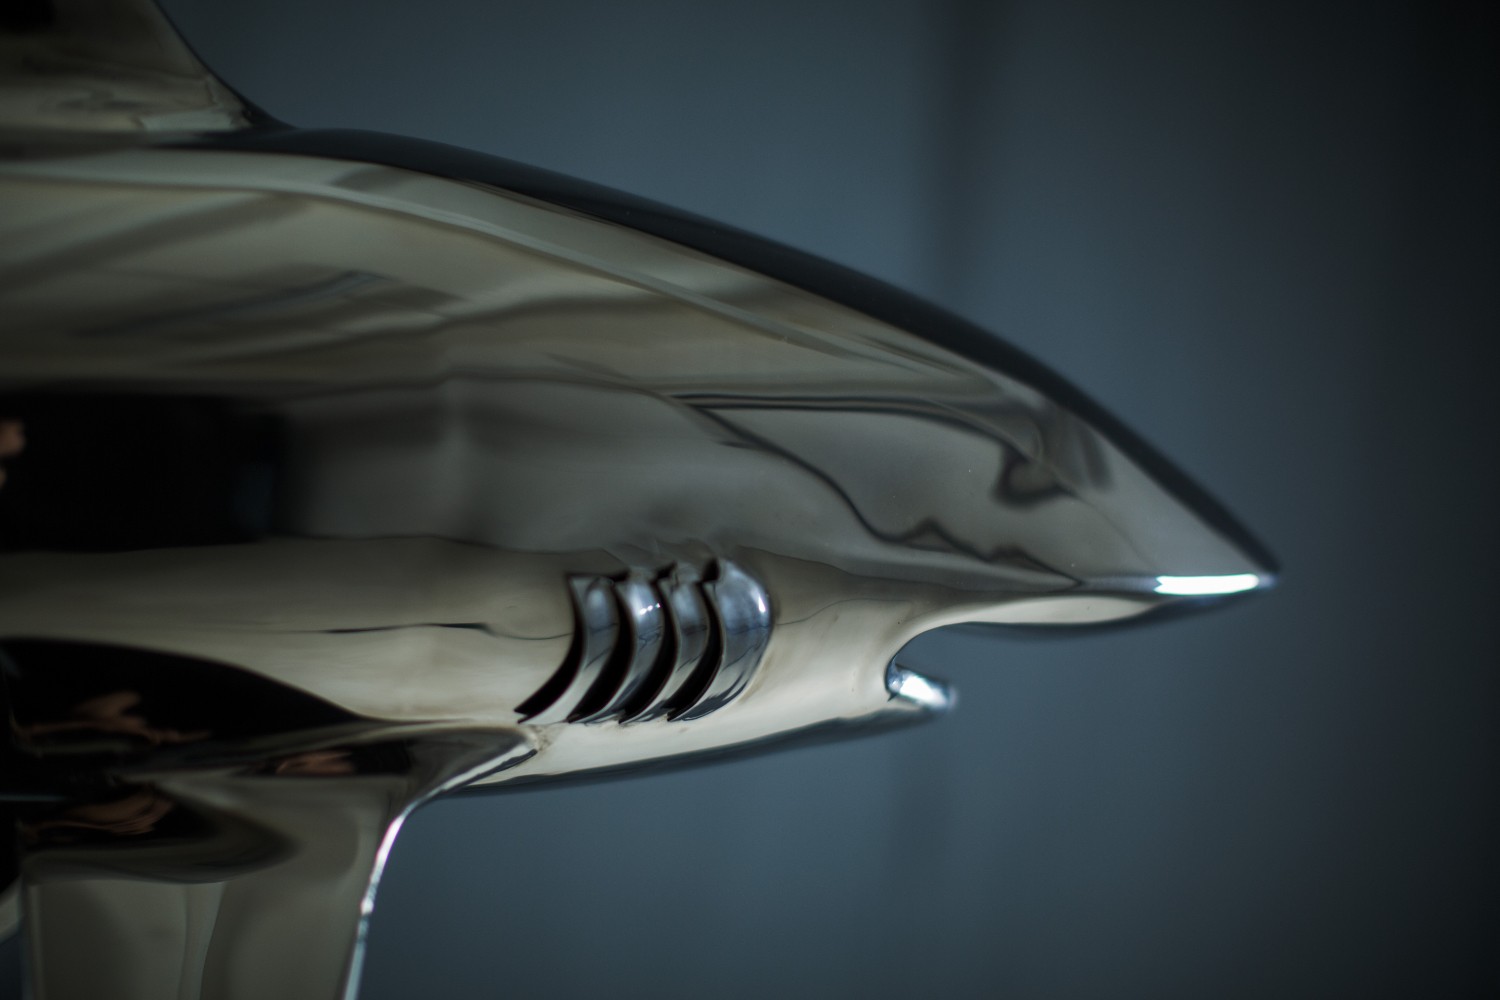 Скульптура акулы